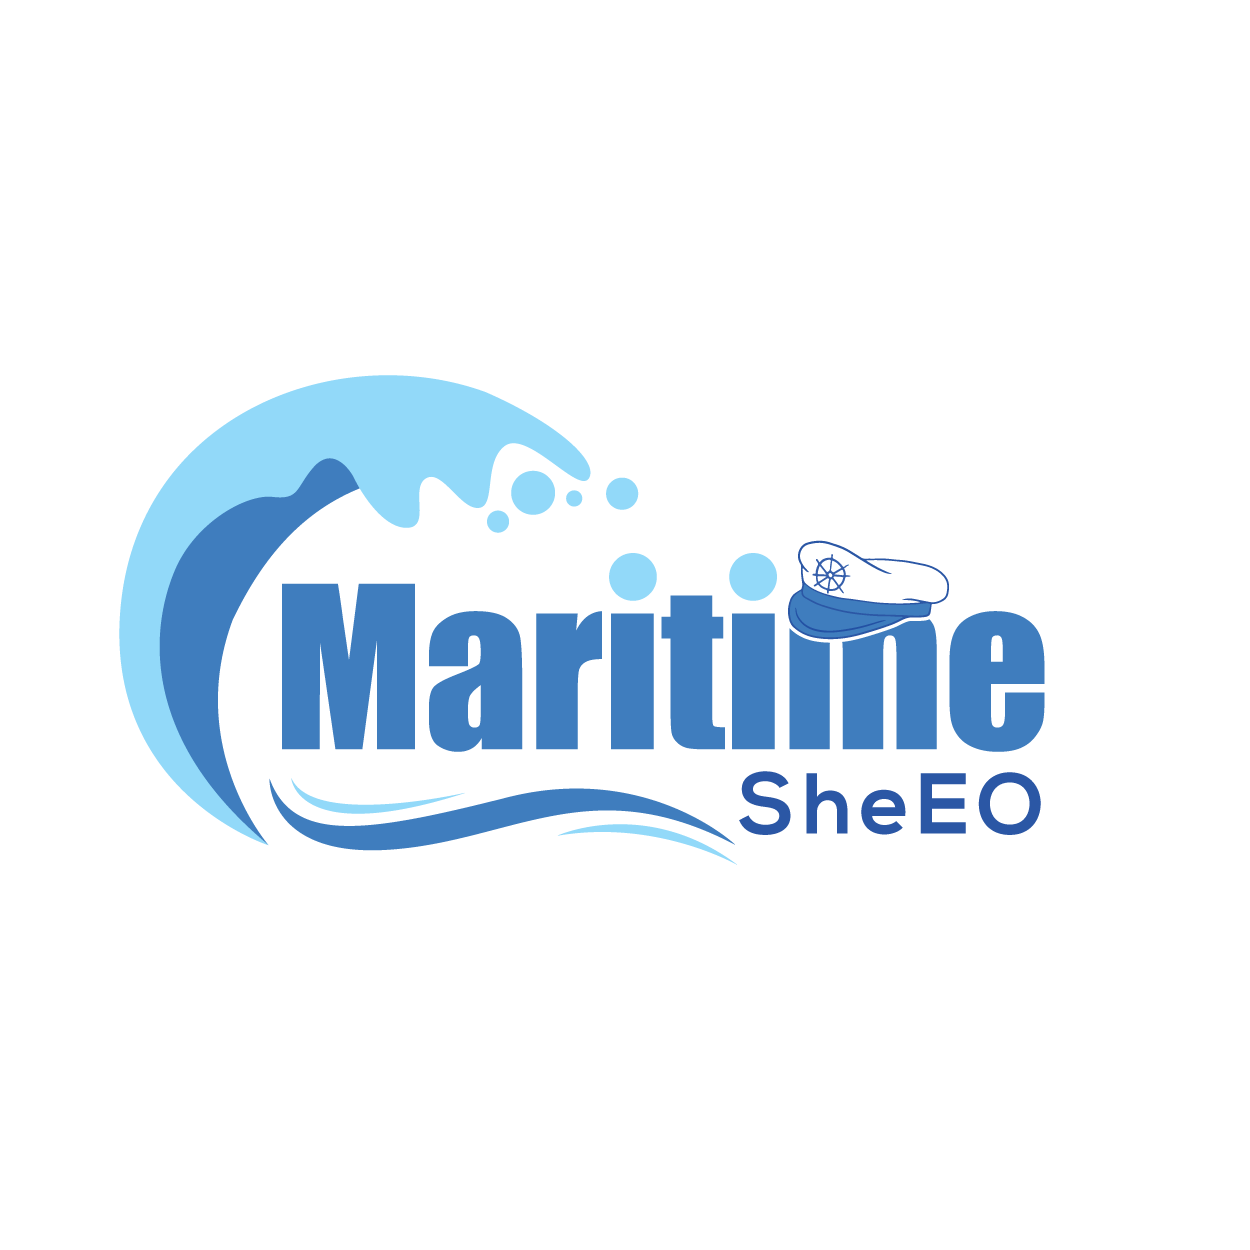  Maritime SheEO's Leadership Accelerator Program Review 